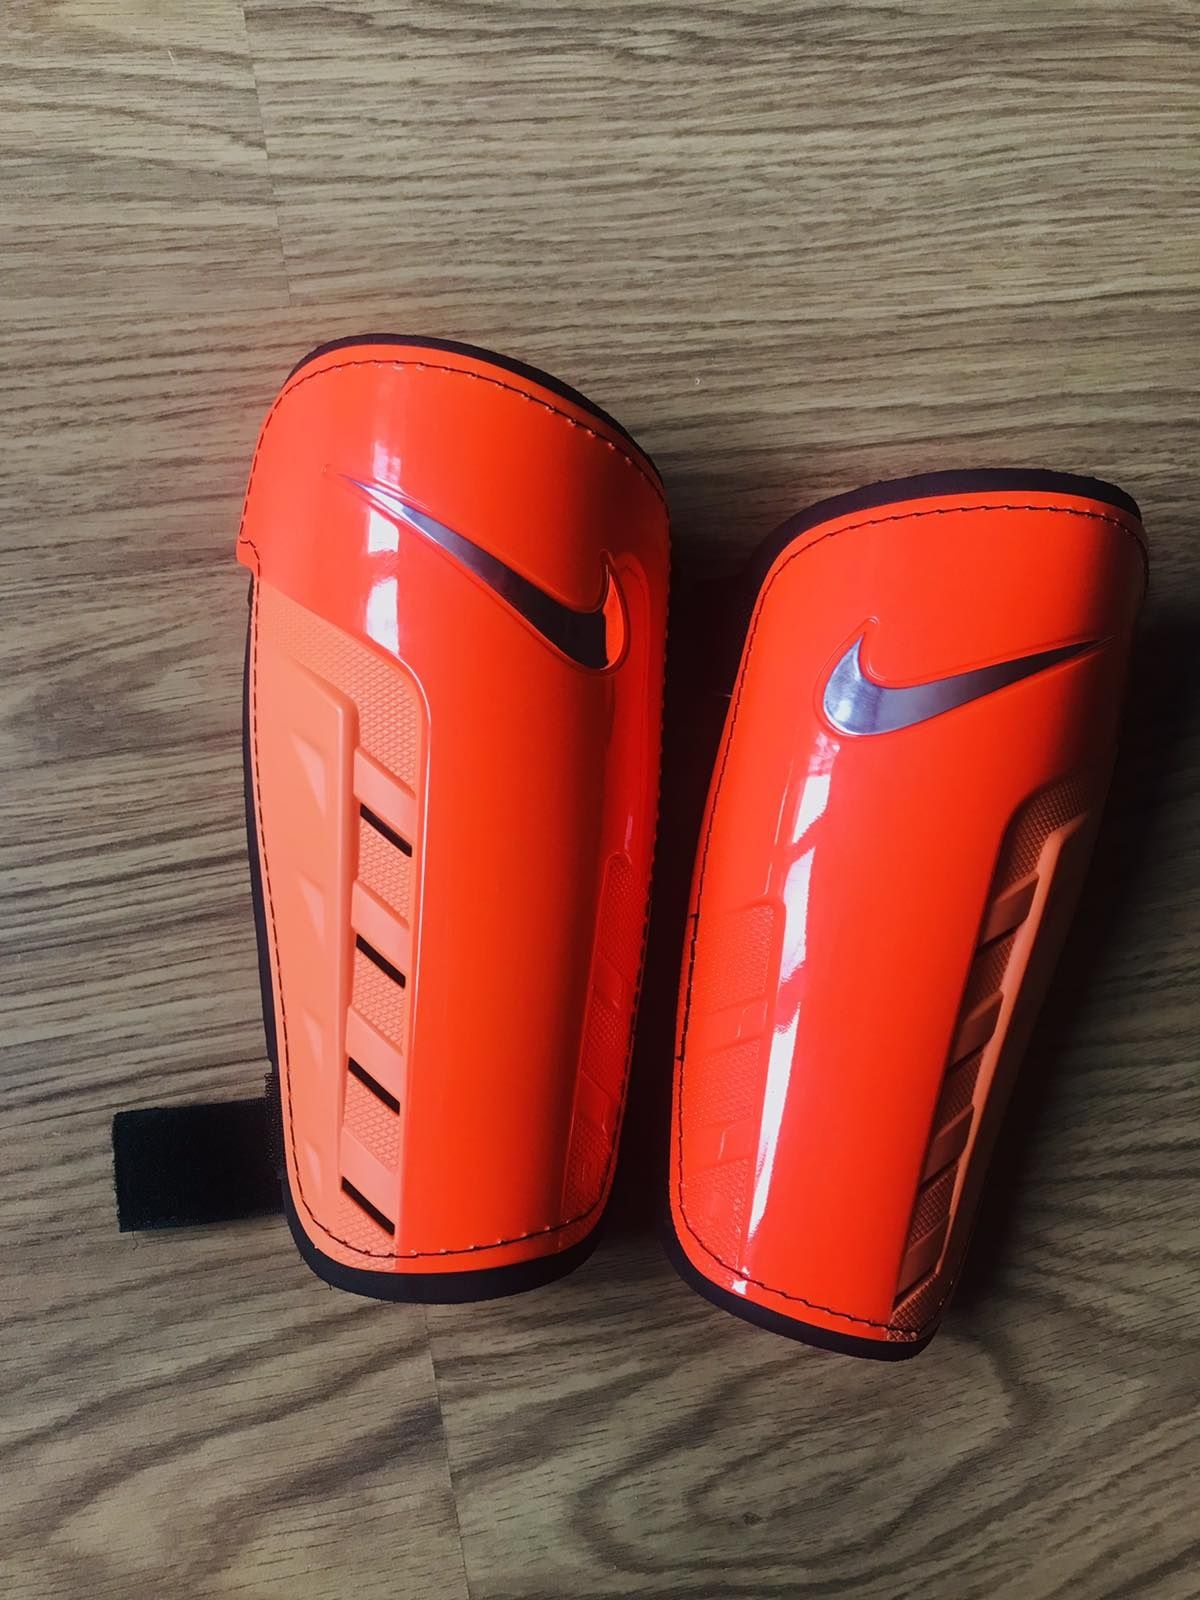 Накладки Nike. Кімоно.    Пояс оранжевий з полоскою